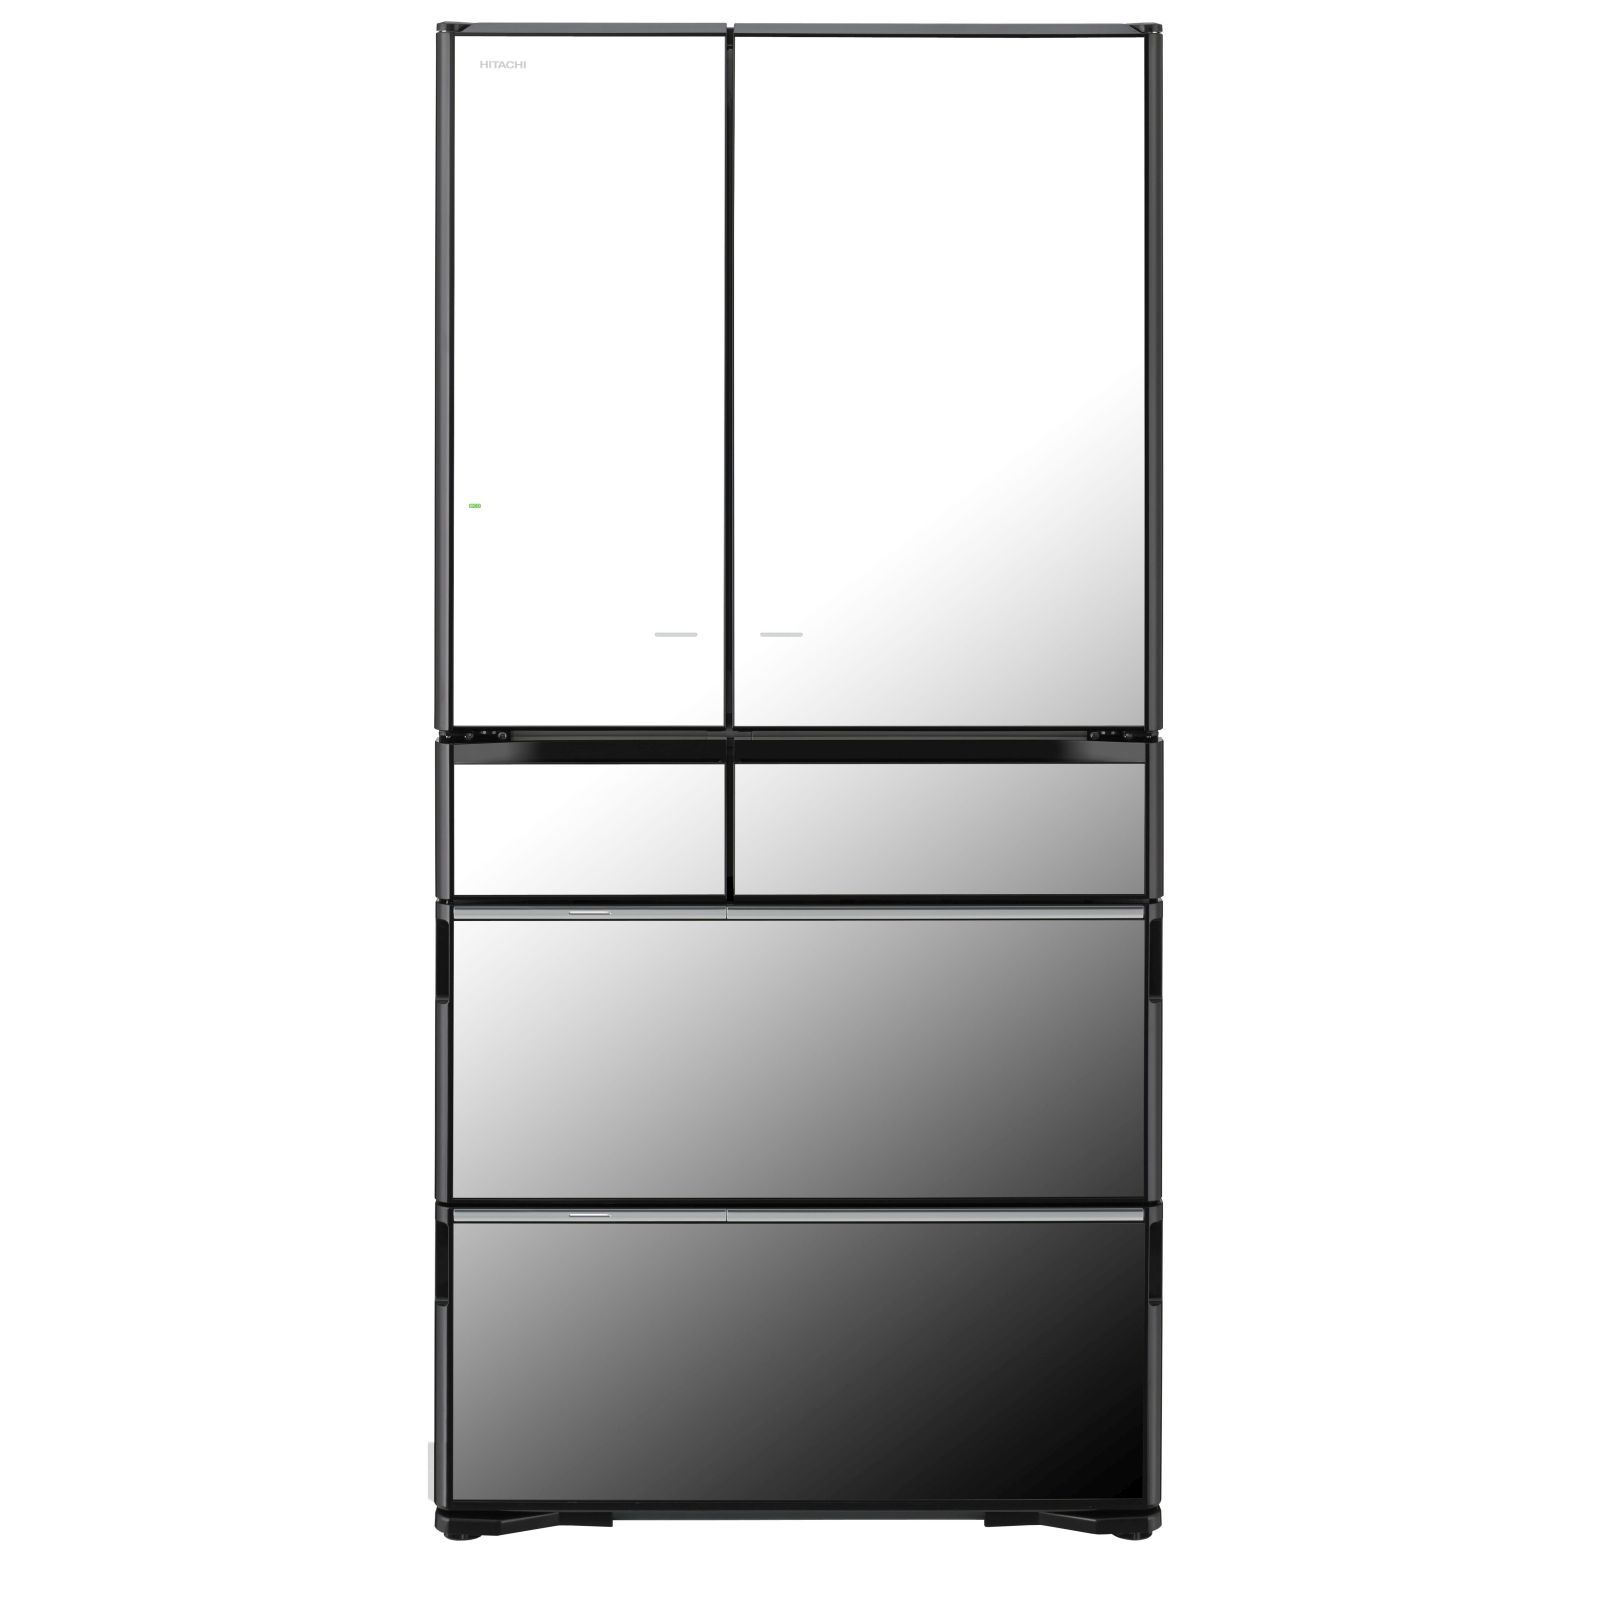 Hitachi RX730GS Refrigerator